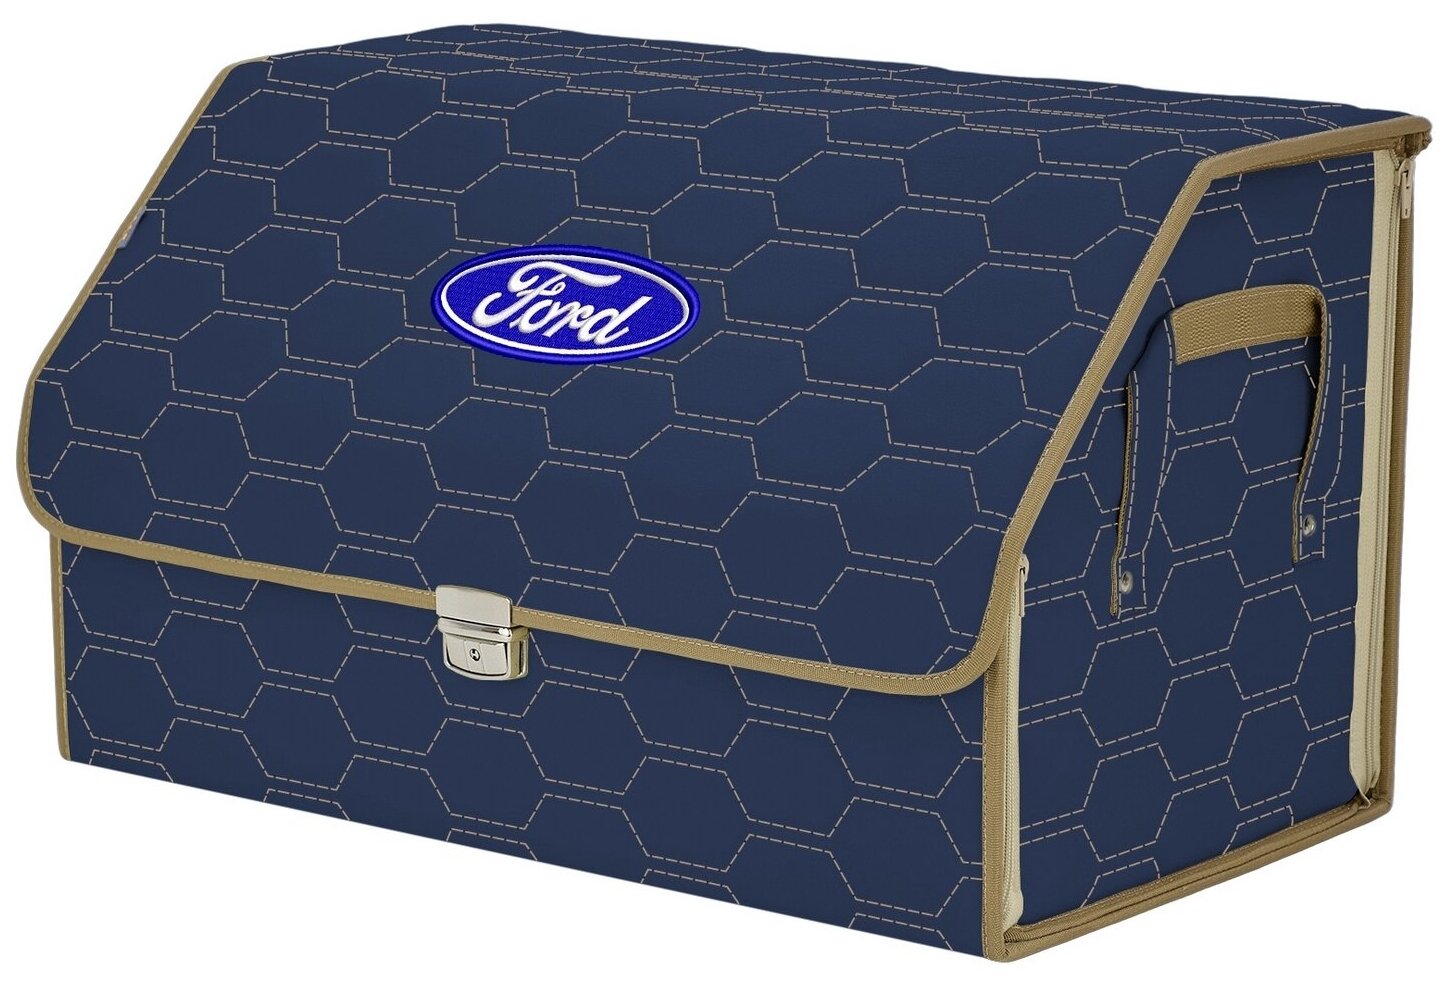 Органайзер-саквояж в багажник "Союз Премиум" (размер XL). Цвет: синий с бежевой прострочкой Соты и вышивкой Ford (Форд).